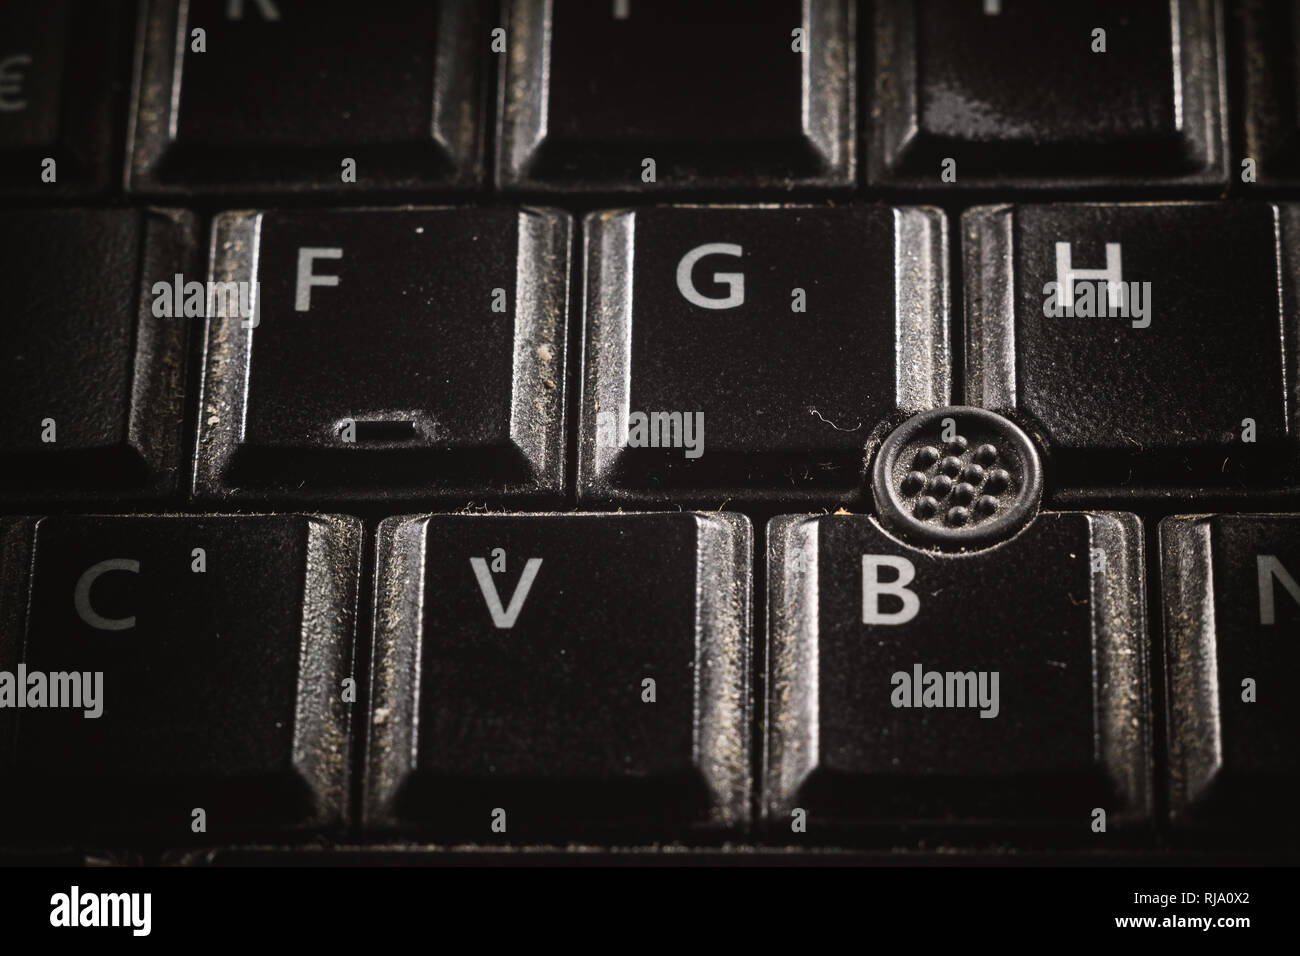 Nahaufnahme der alten und schmutzigen schwarzen Tasten auf der Tastatur. Stockfoto